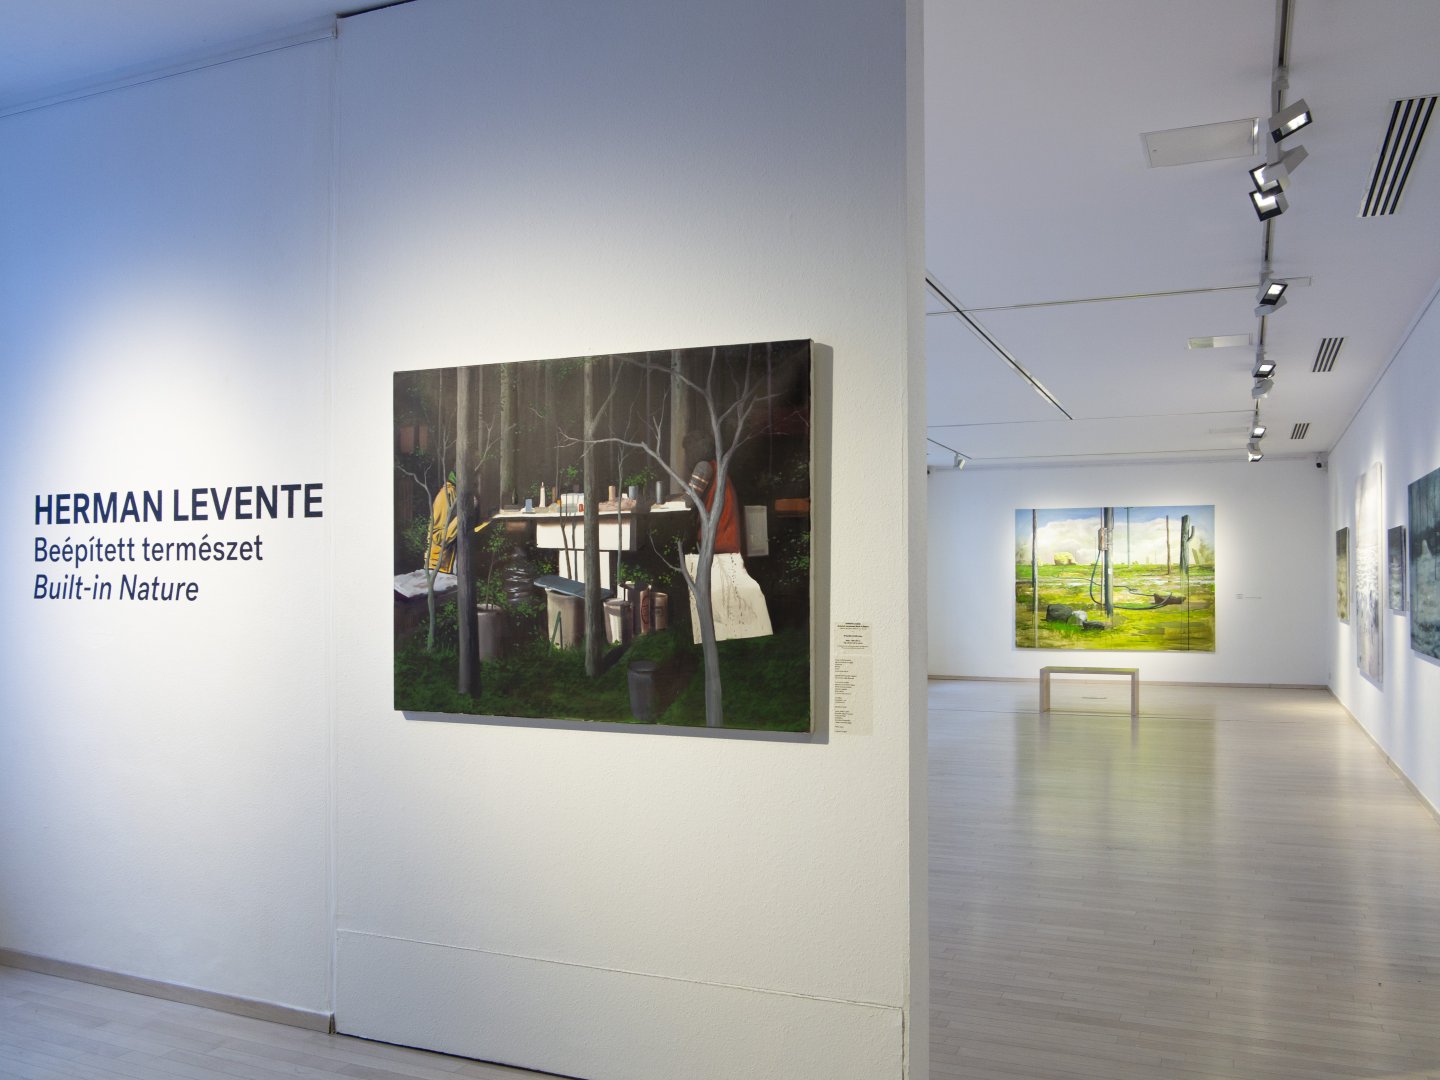 Herman Levente Beépített természet című kiállítása a Várfok Galériában – forrás: Várfok Galéria